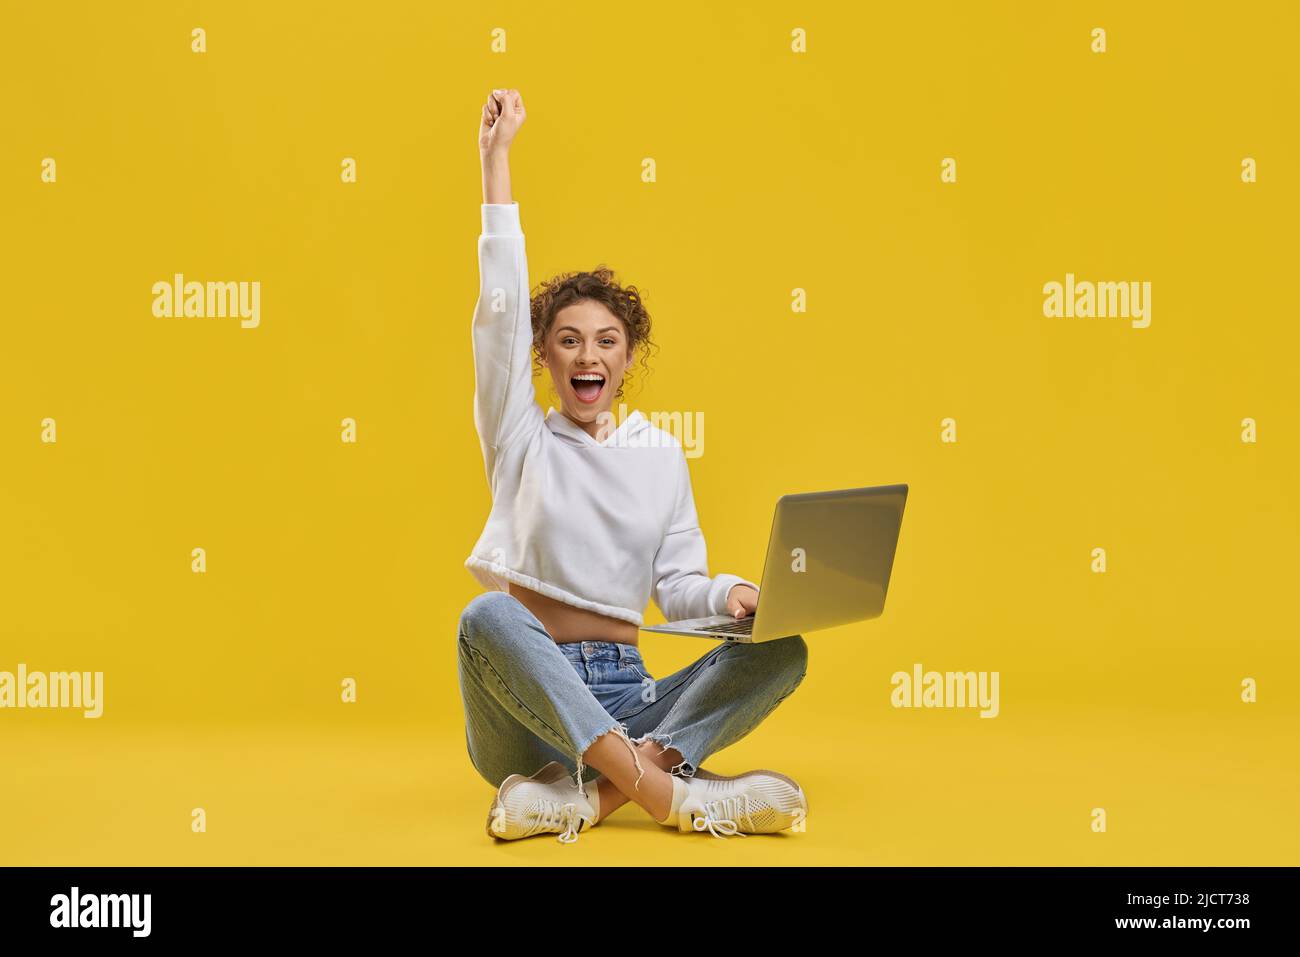 Une femme excitée célébrant la victoire, regardant l'écran du netbook à l'intérieur. Vue de face d'une femme freelance heureuse appréciant un démarrage réussi, levant la main, isolée sur fond orange. Concept d'émotion. Banque D'Images